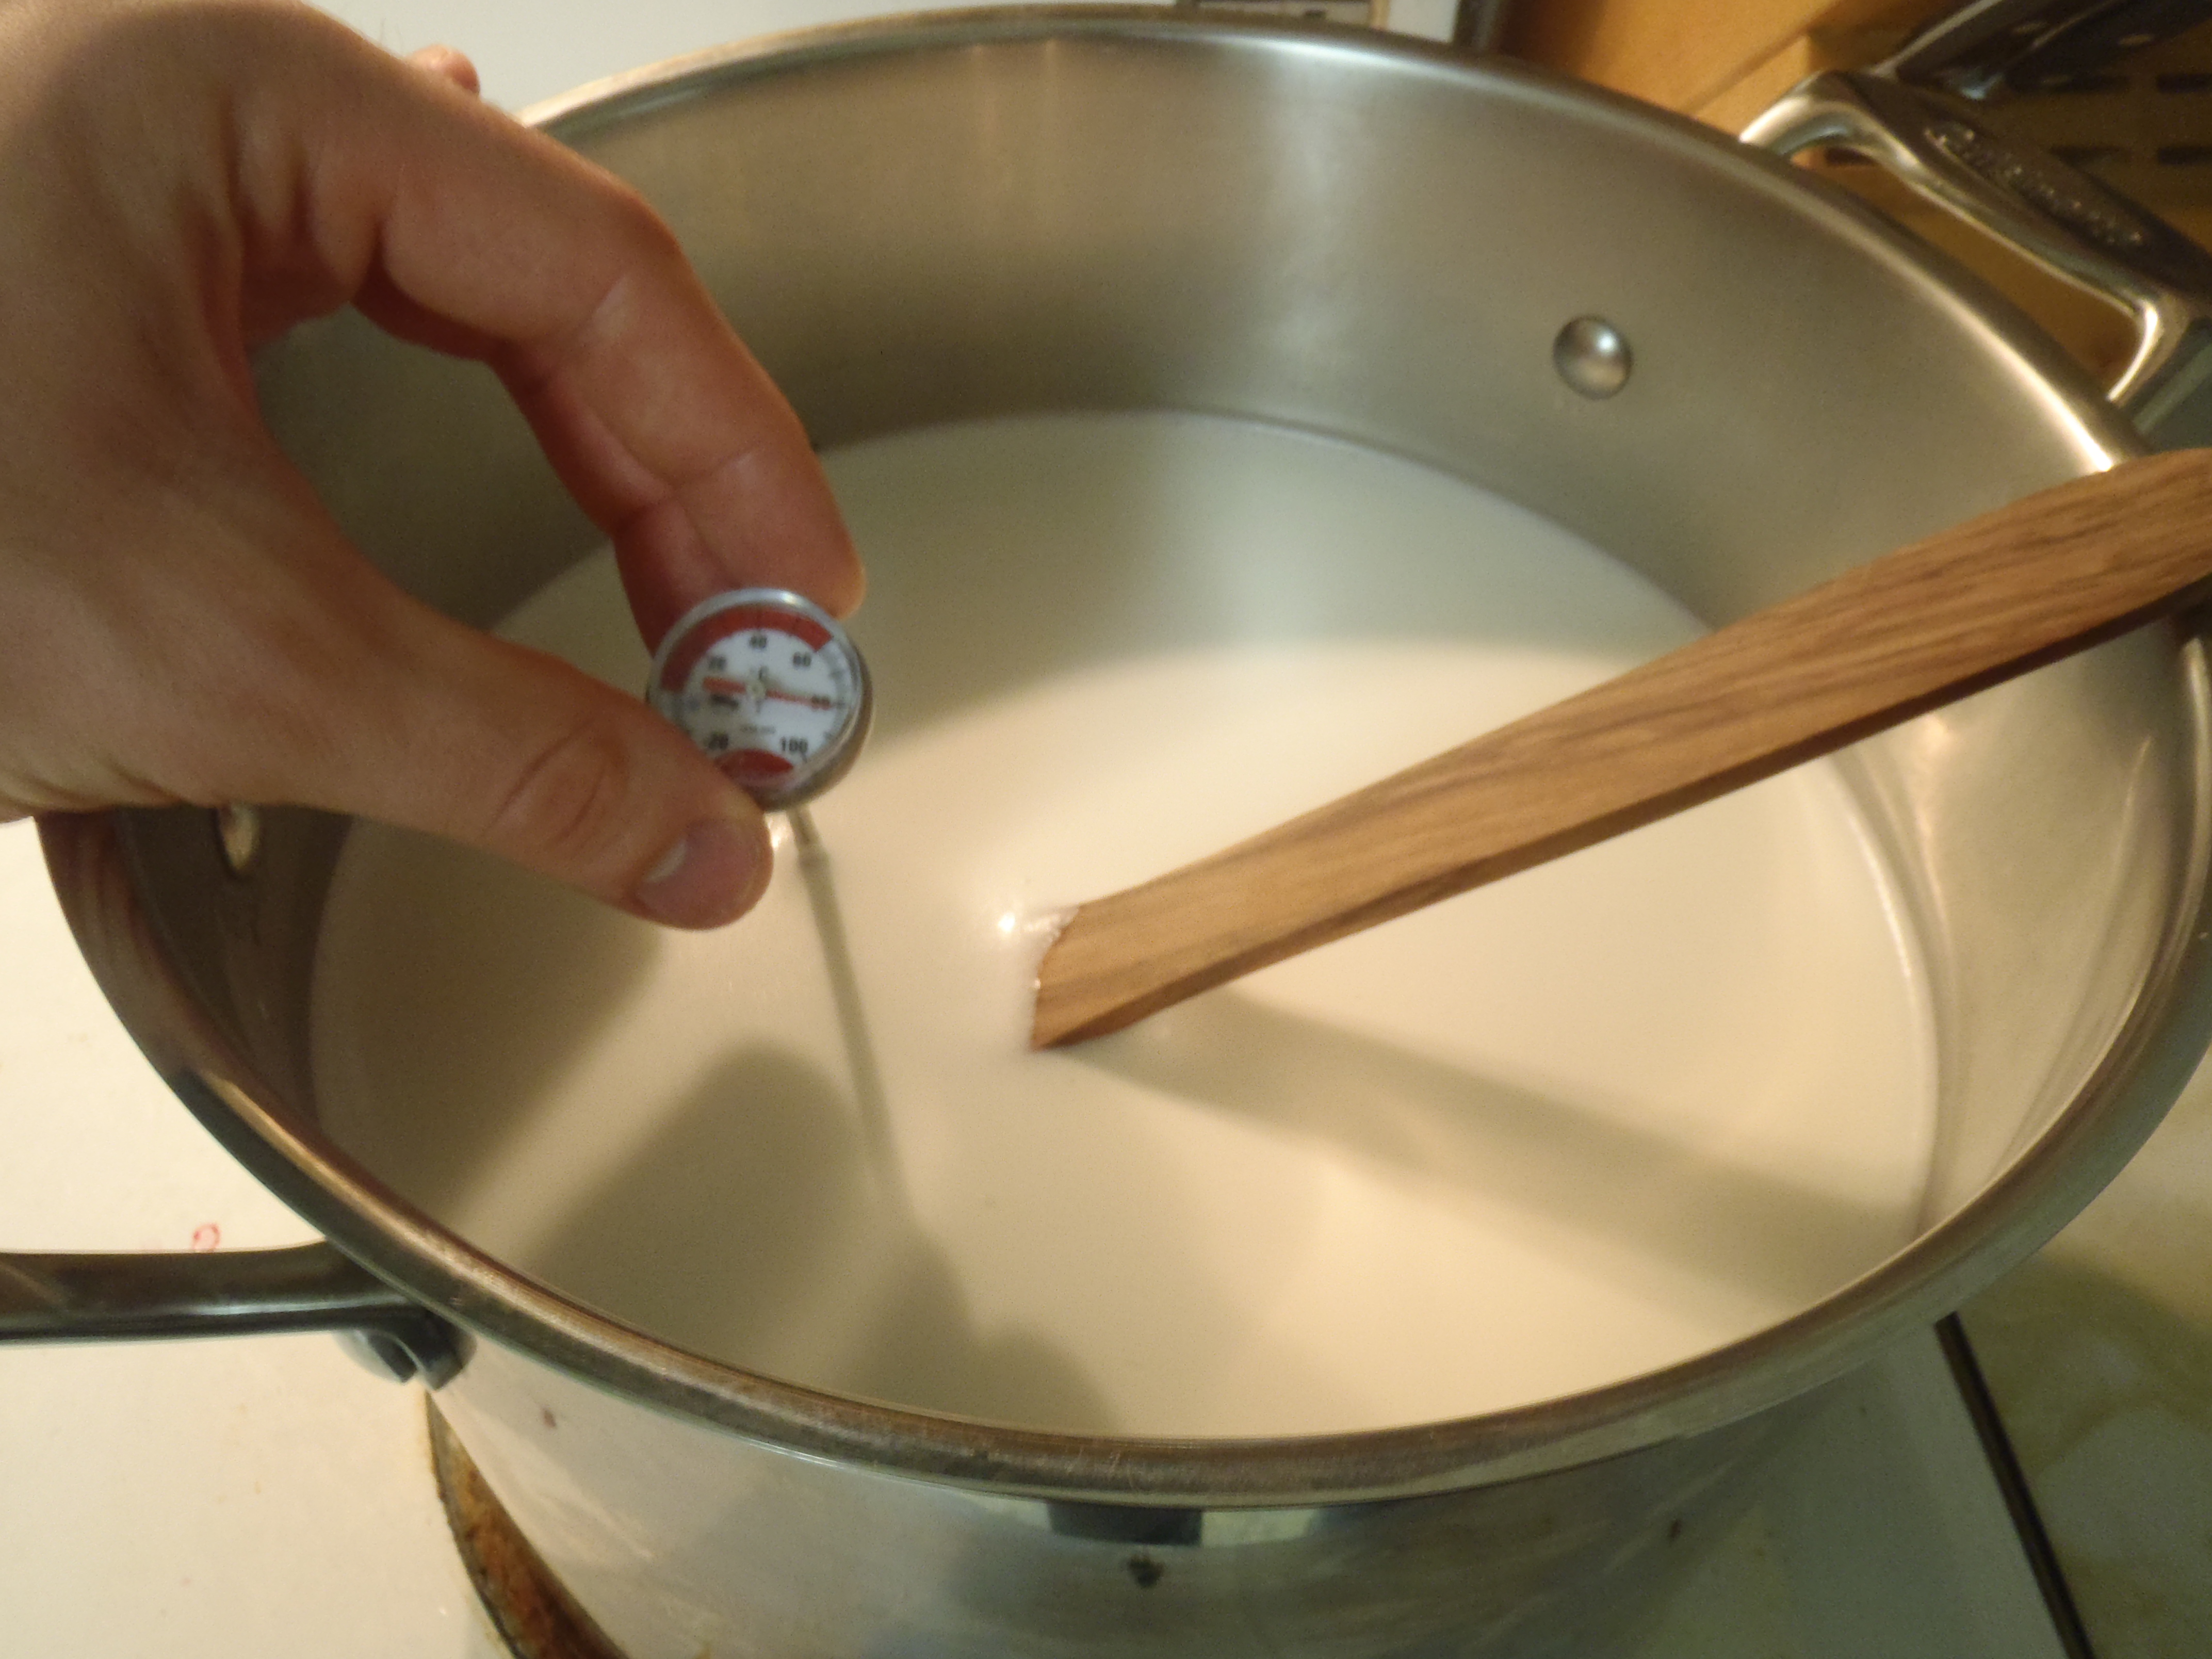 Heating the milk to make yogurt